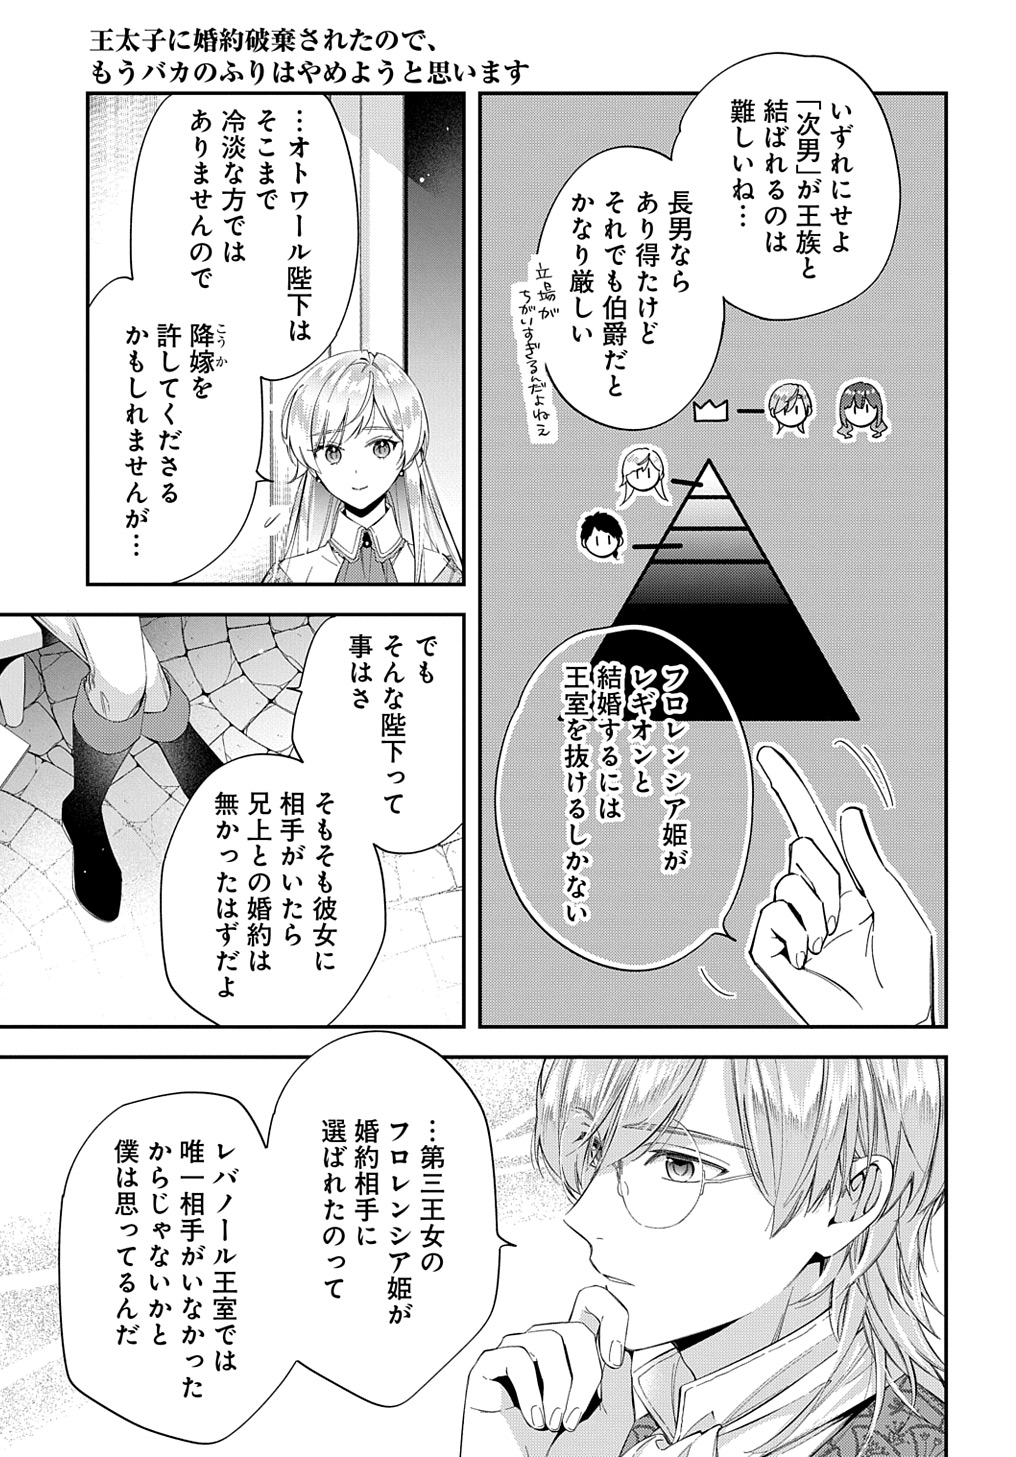 Outaishi ni Konyaku Hakisareta no de, Mou Baka no Furi wa Yameyou to Omoimasu - Chapter 24 - Page 23